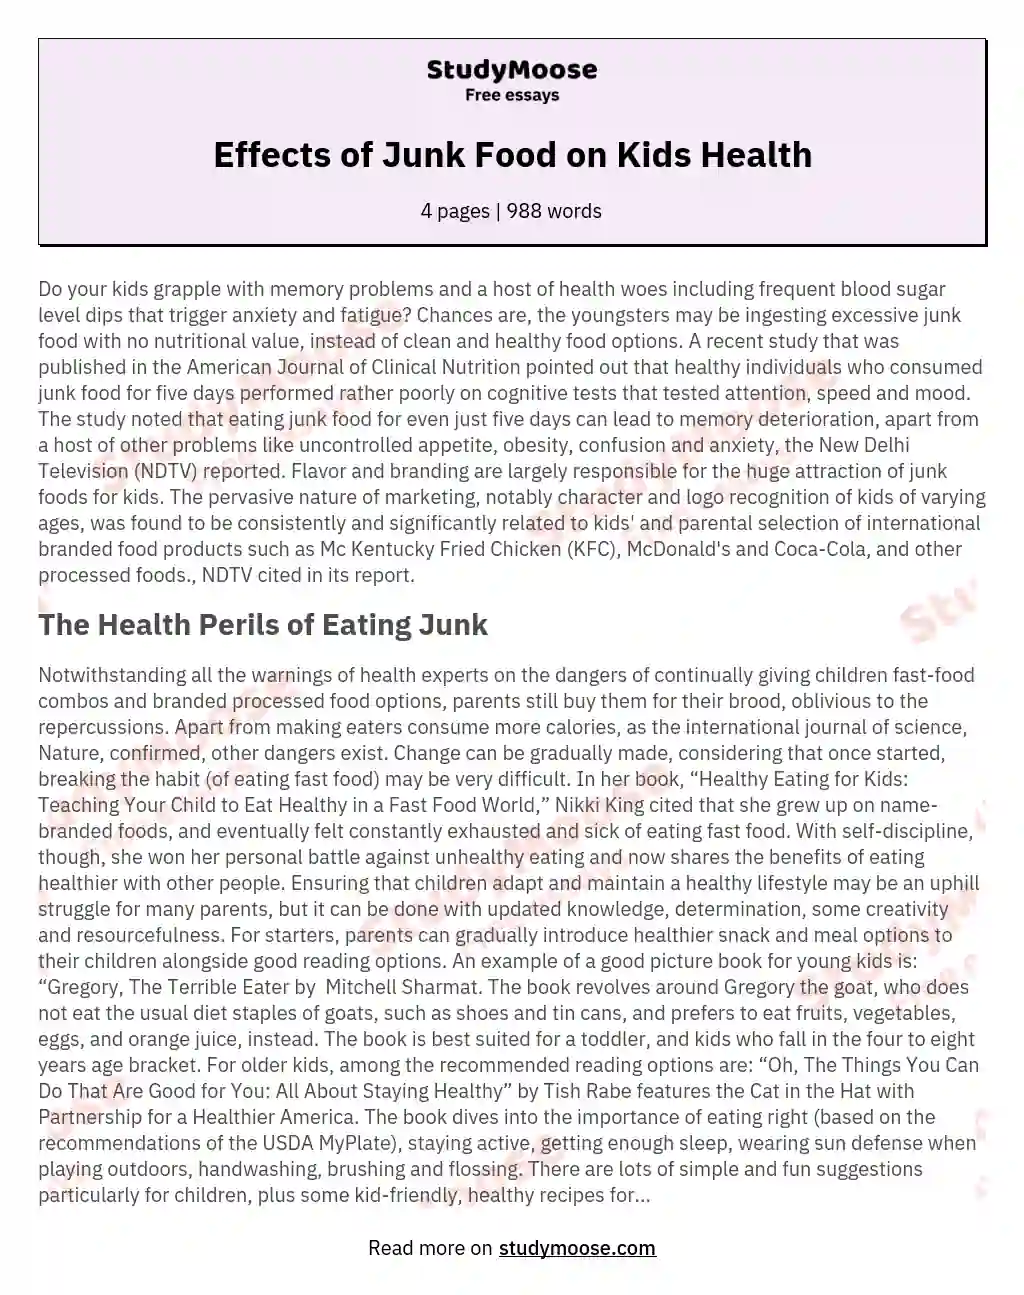 healthy and unhealthy food essay